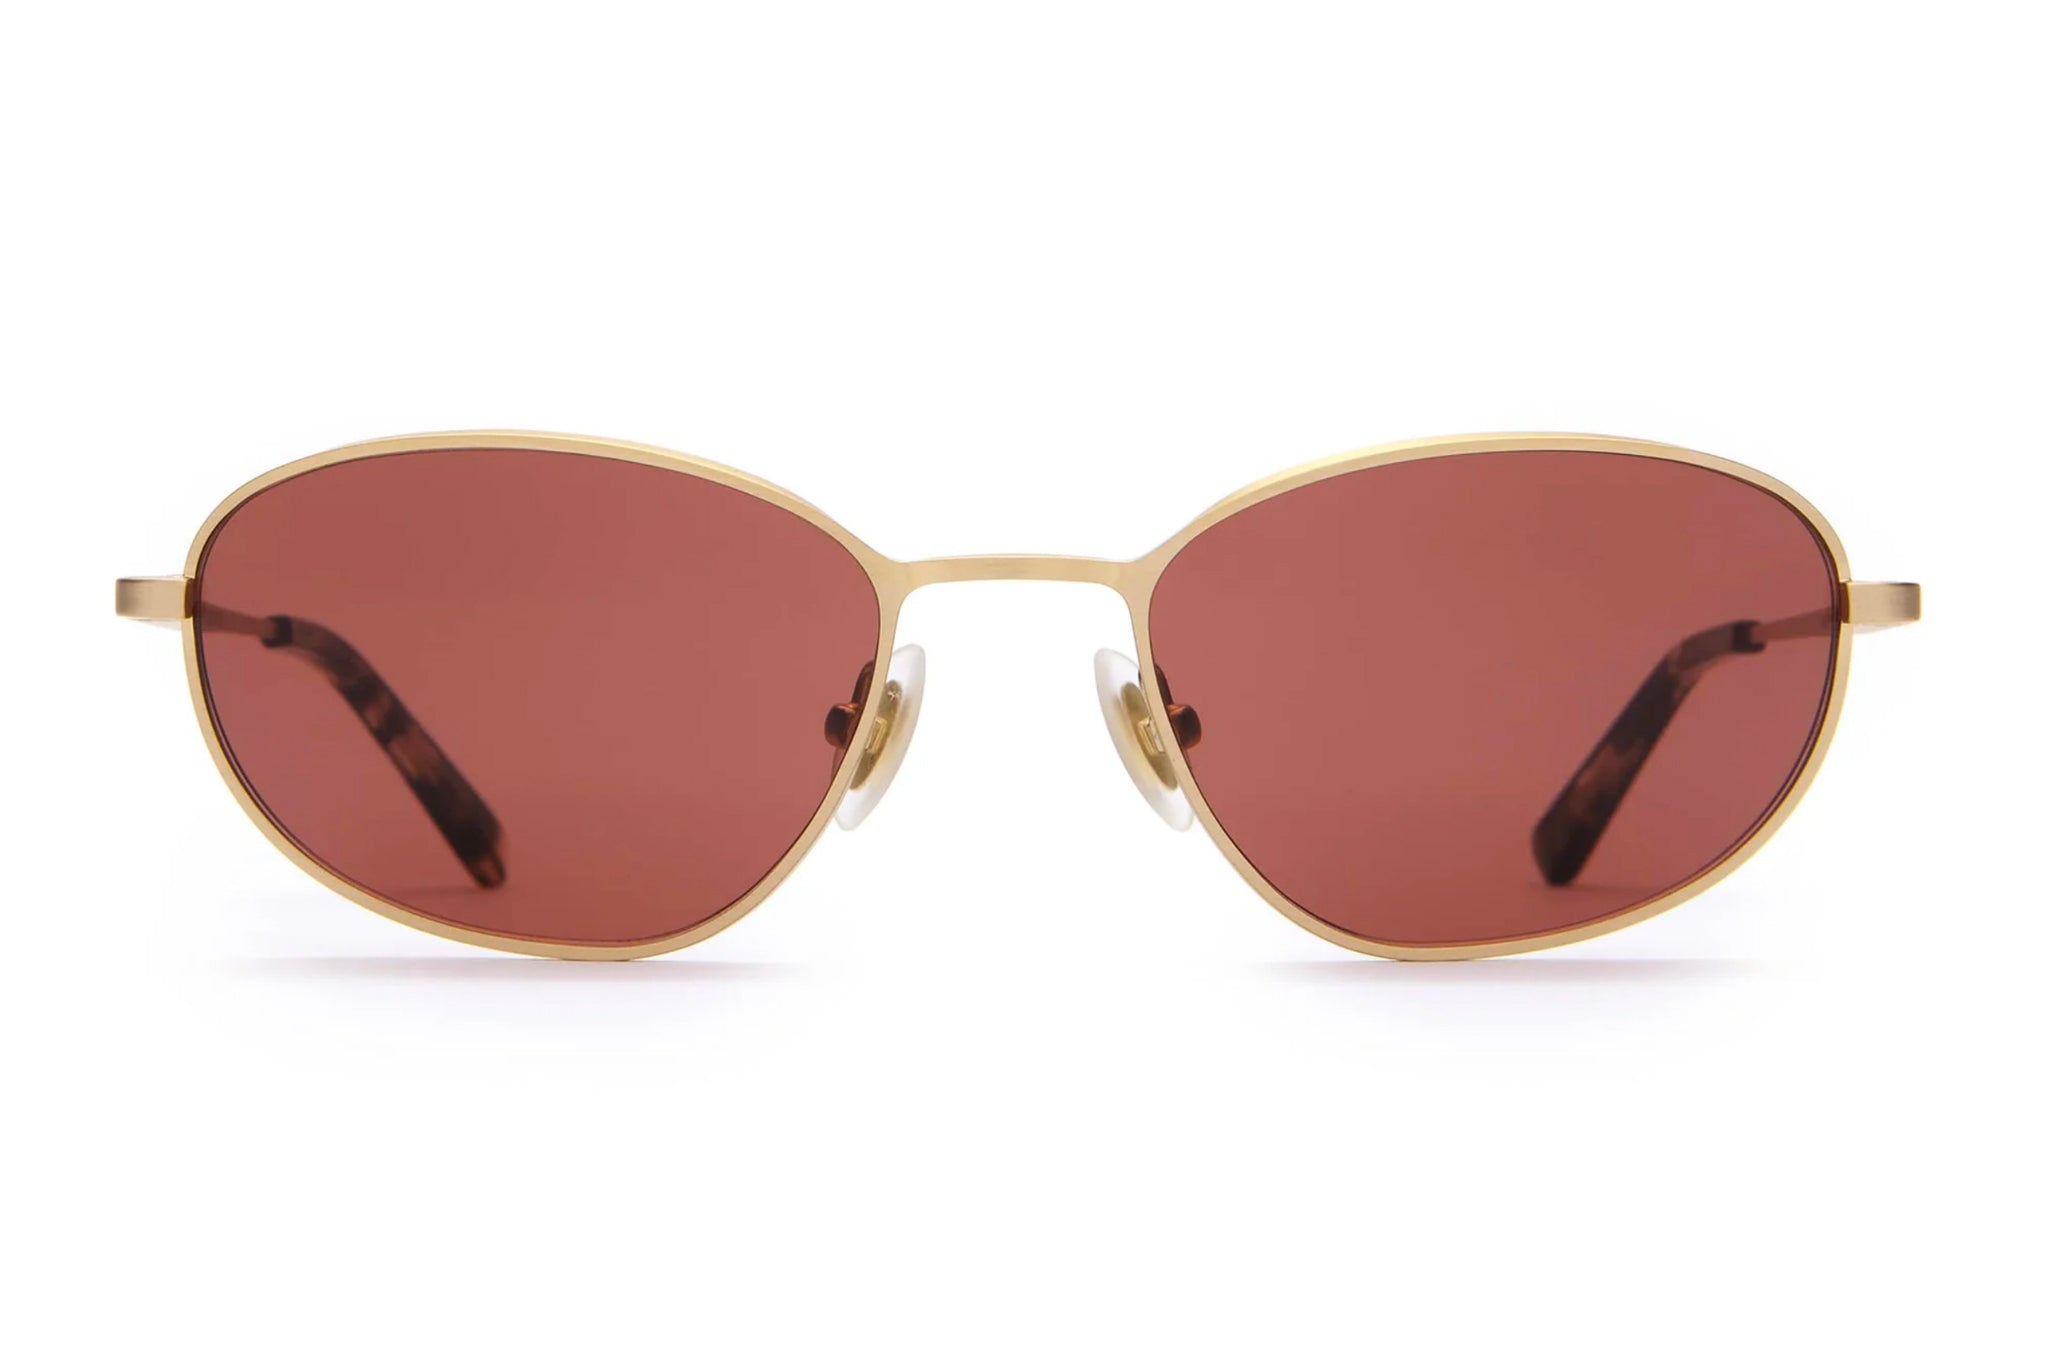 Perma Joy Rosewood Sunglasses